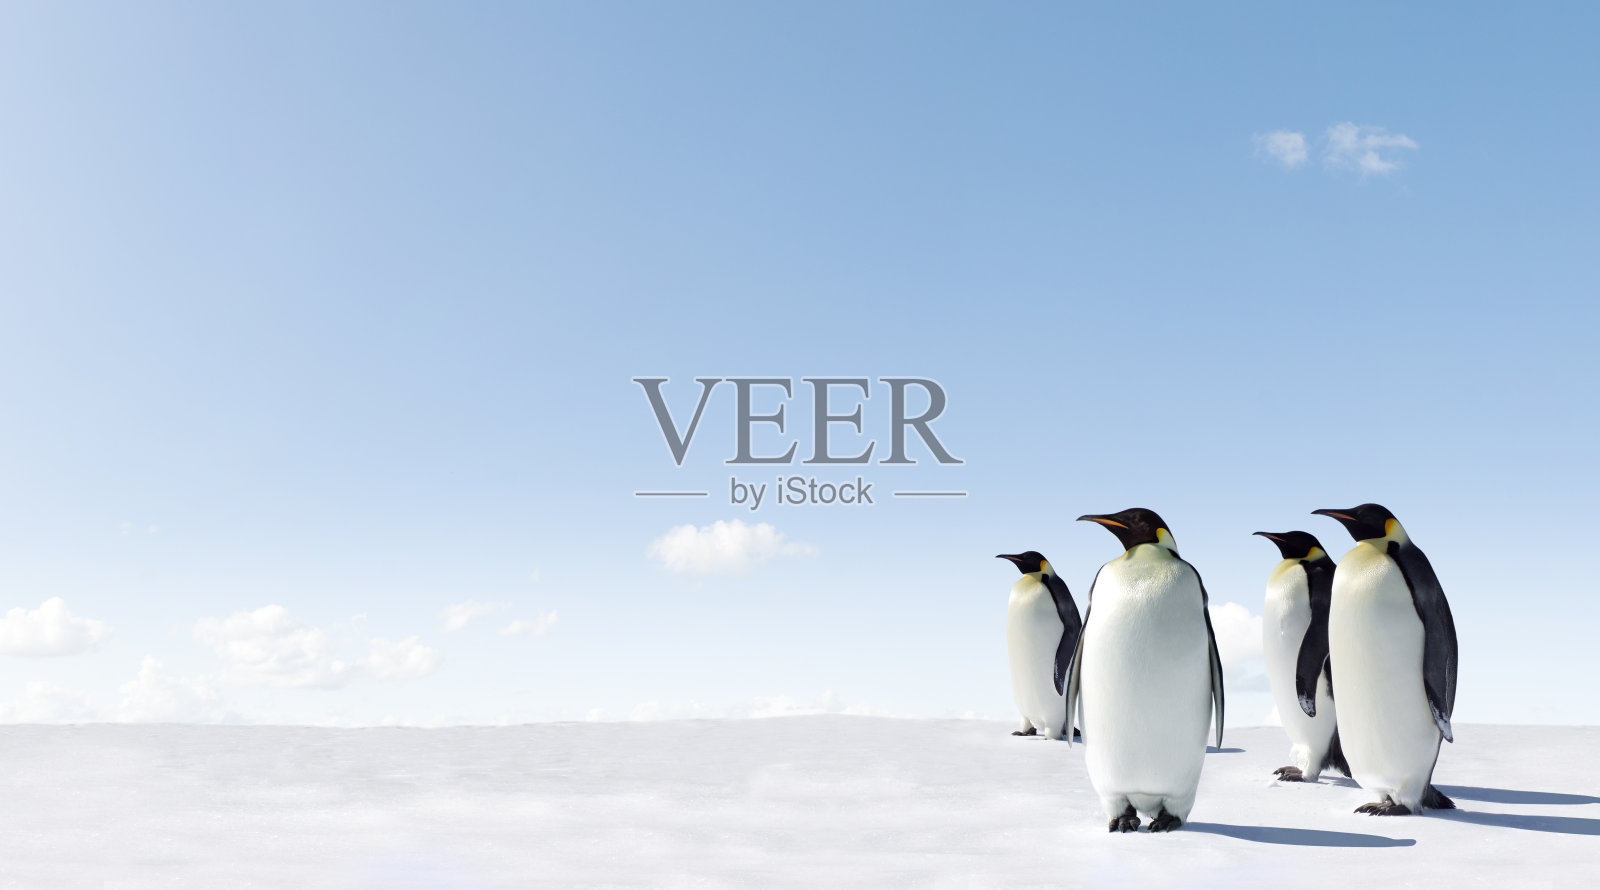 四只企鹅高高站在白雪覆盖的地面上照片摄影图片